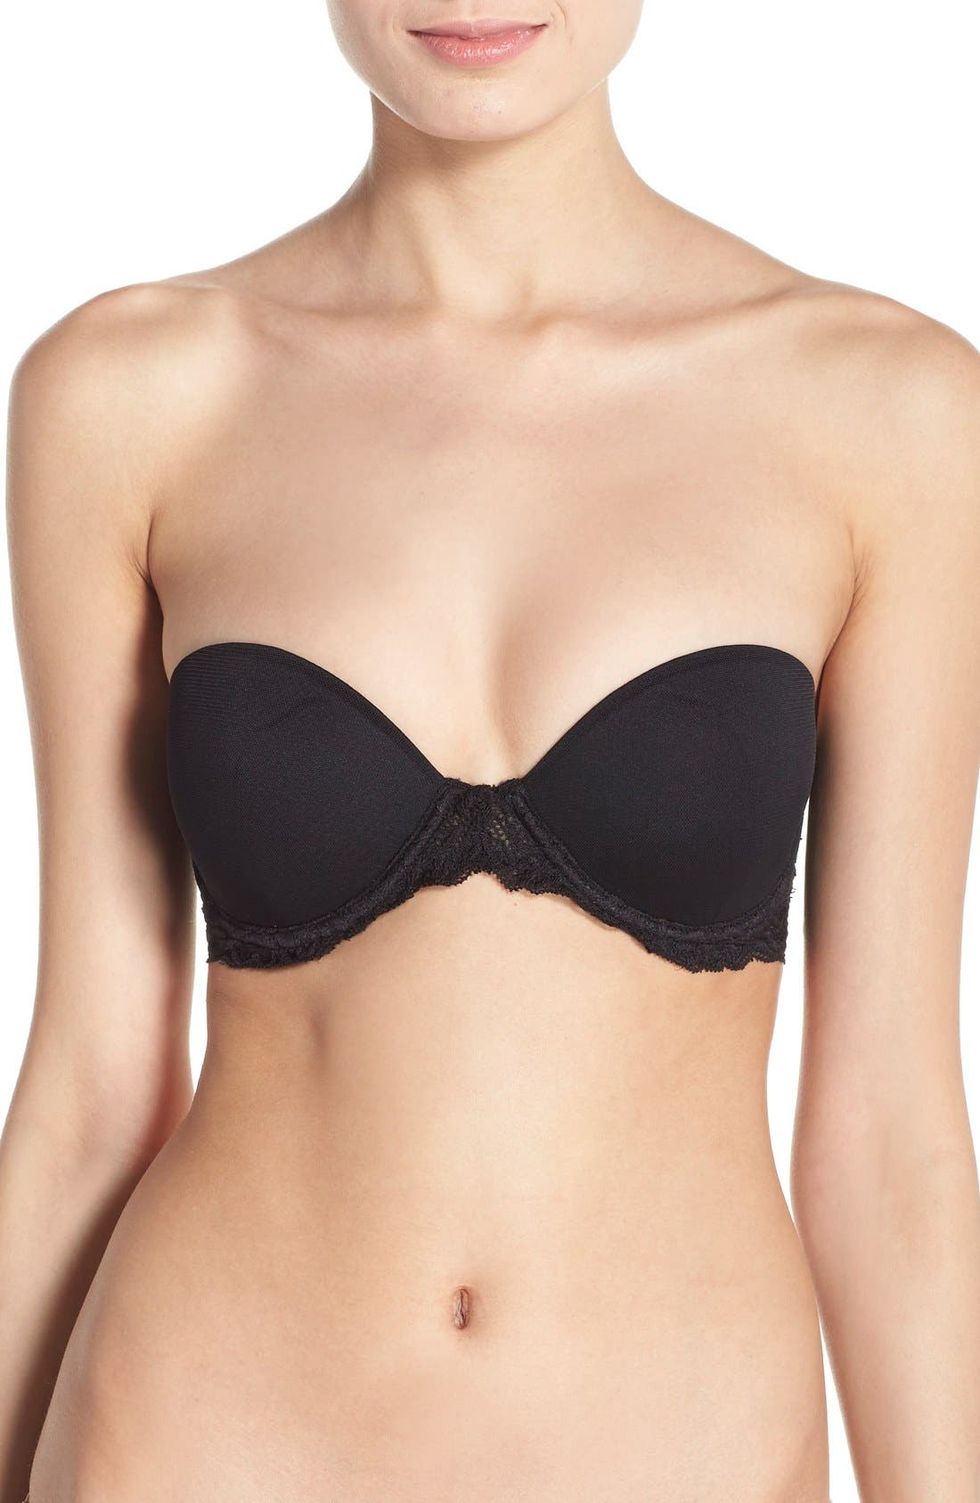 MELENECA Women's underwire strapless bra for better back smoothing